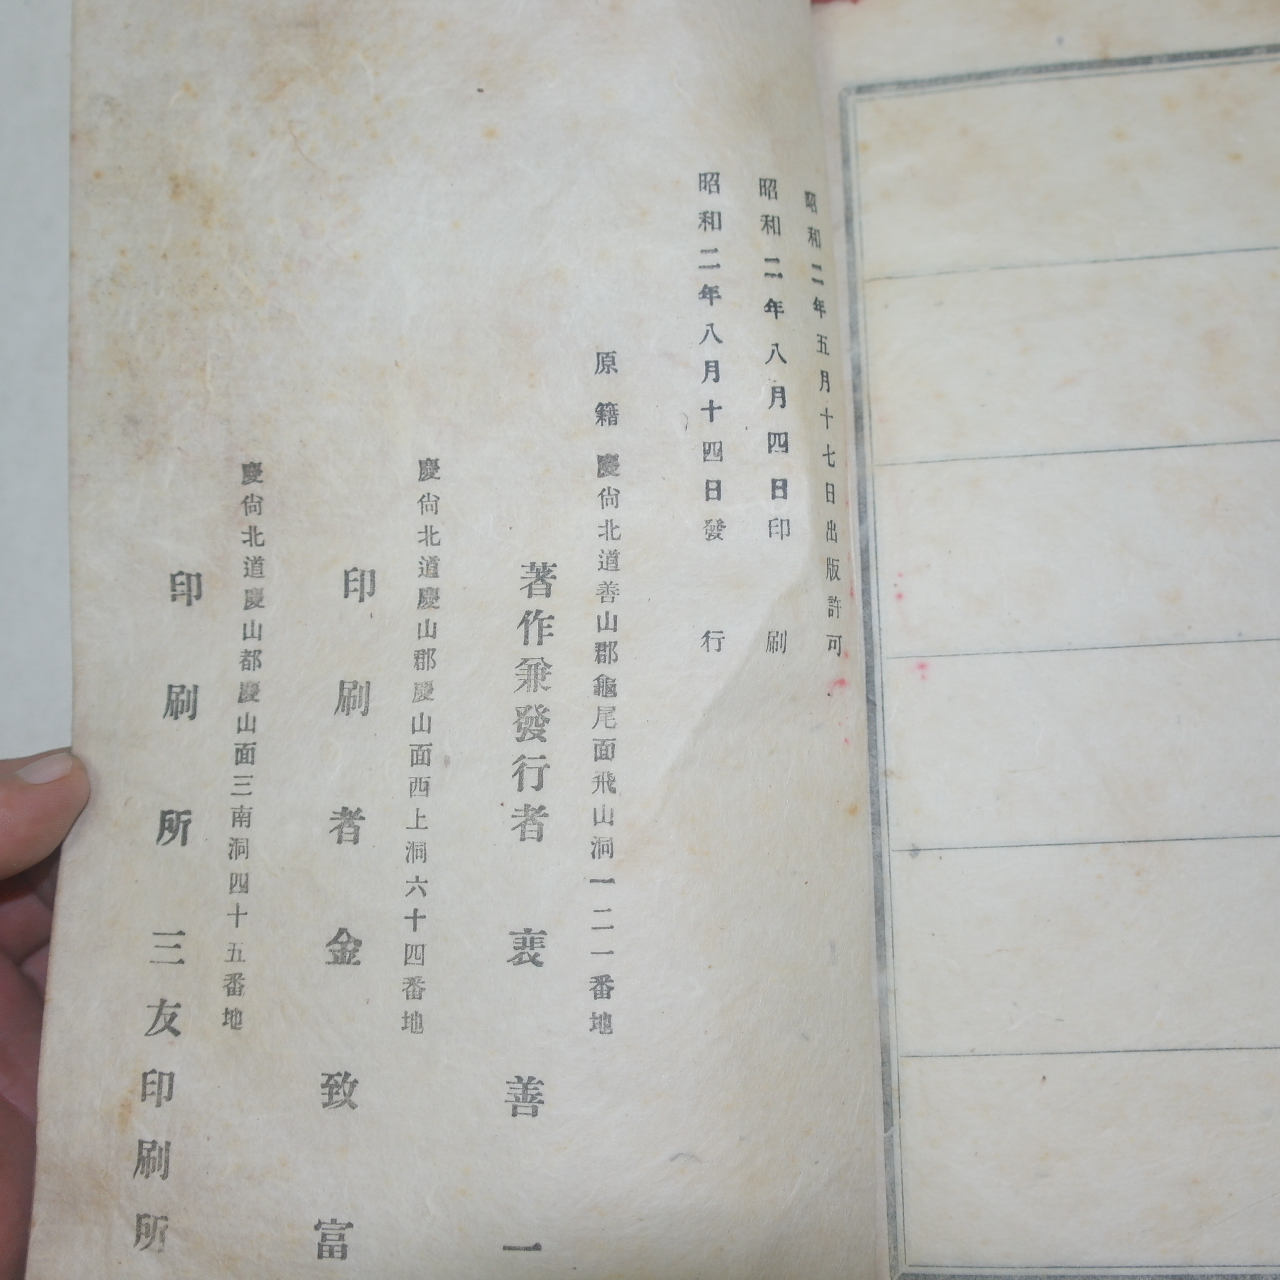 1927년 경북경산간행 경주배씨족보(慶州裵氏族譜)盆城派 1책완질